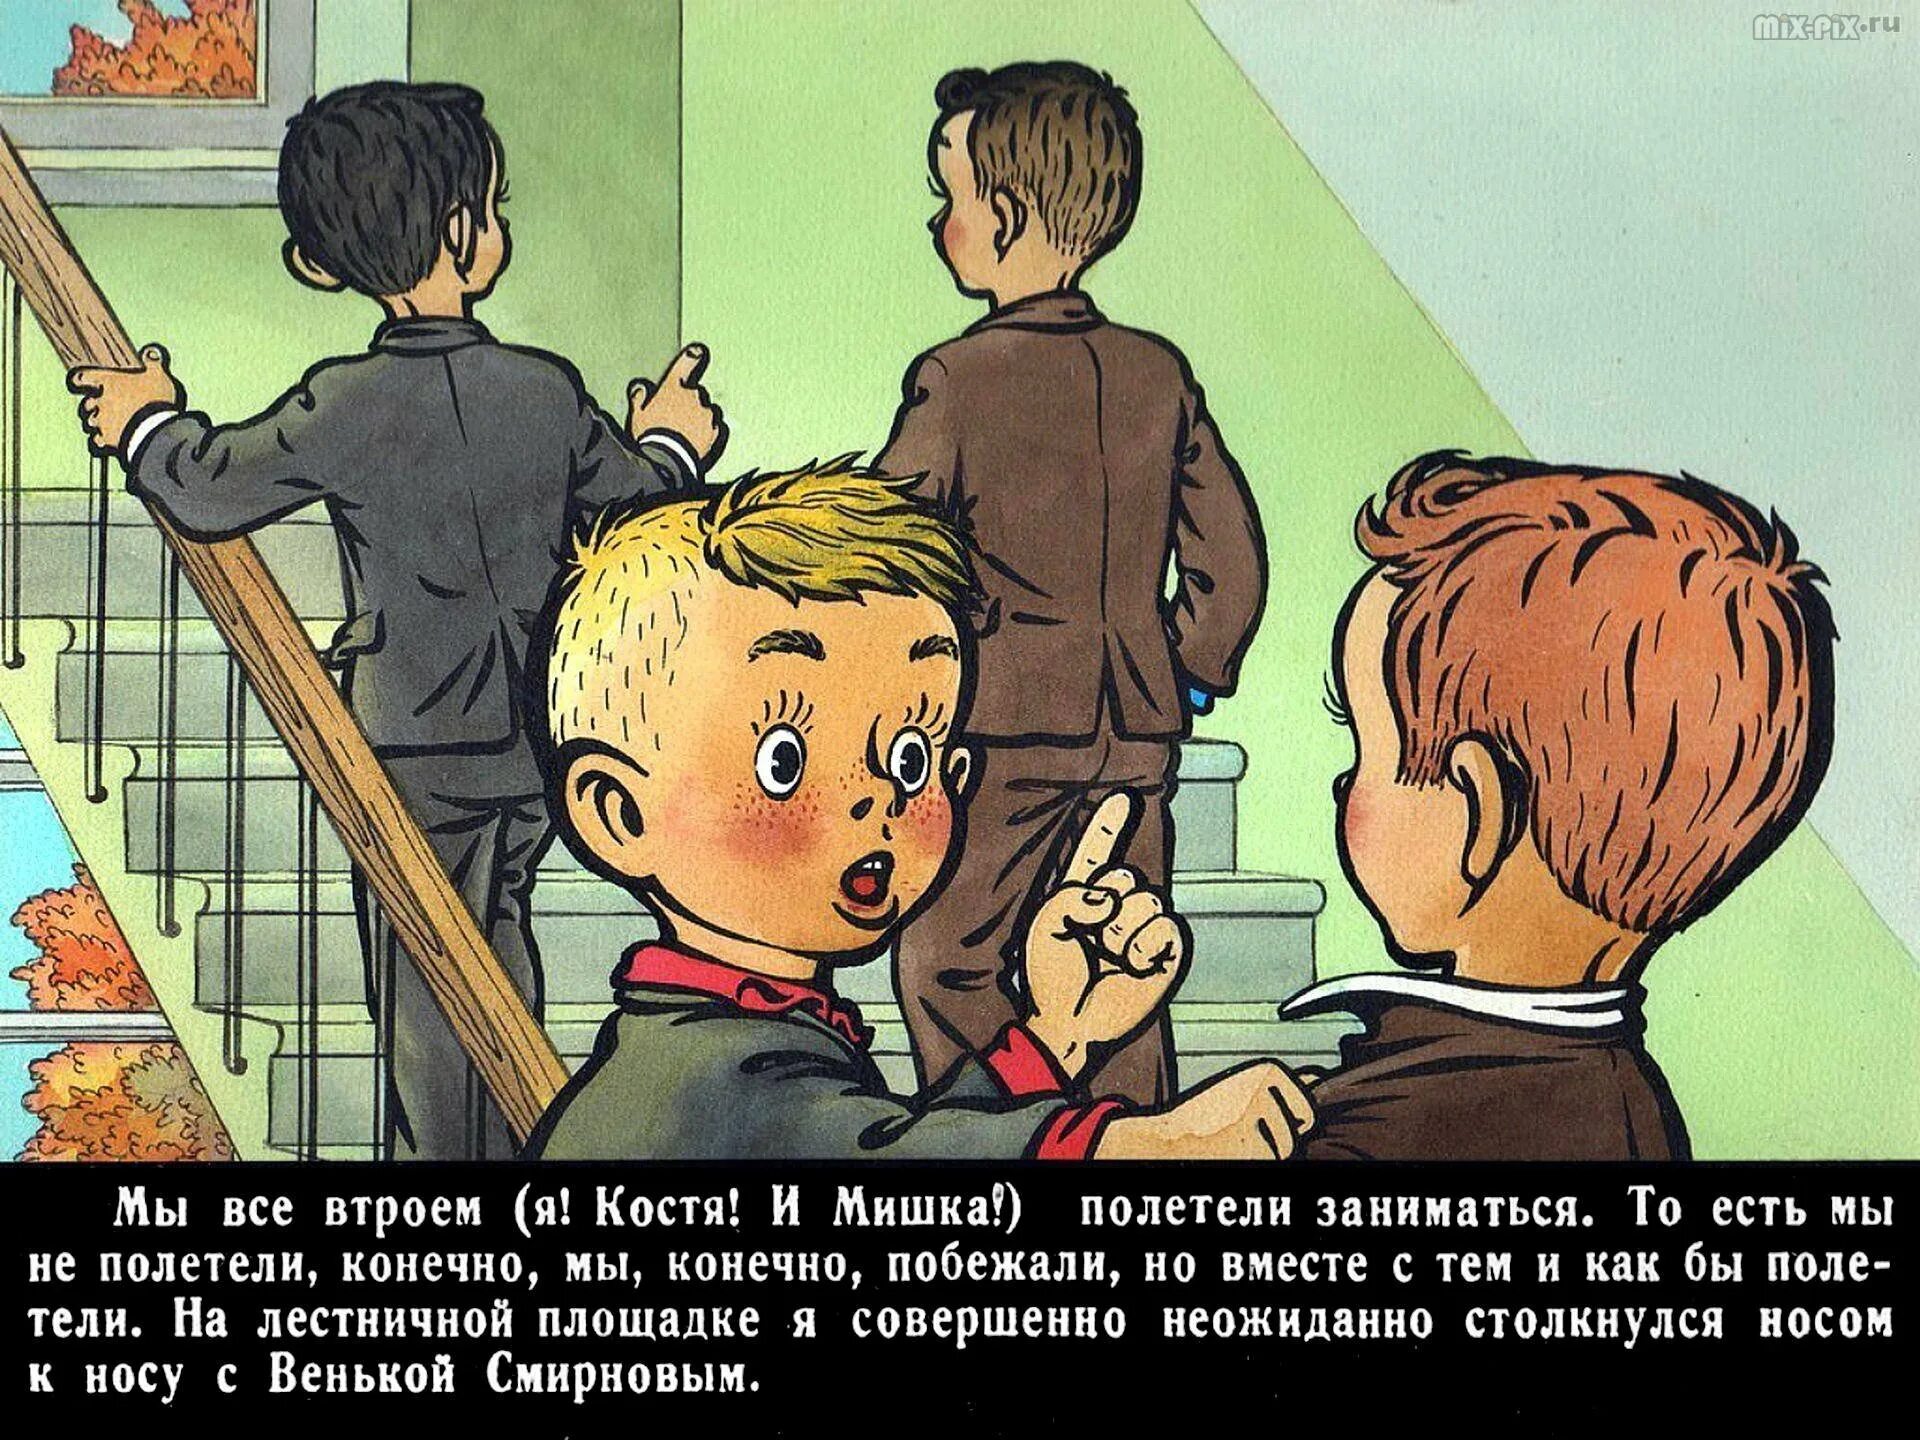 Повесть будь человеком. Баранкин будь человеком рисунок. Рисунок к повести Баранкин будь человеком. М Медведев Баранкин будь человеком. Повесть Баранкин будь человеком.